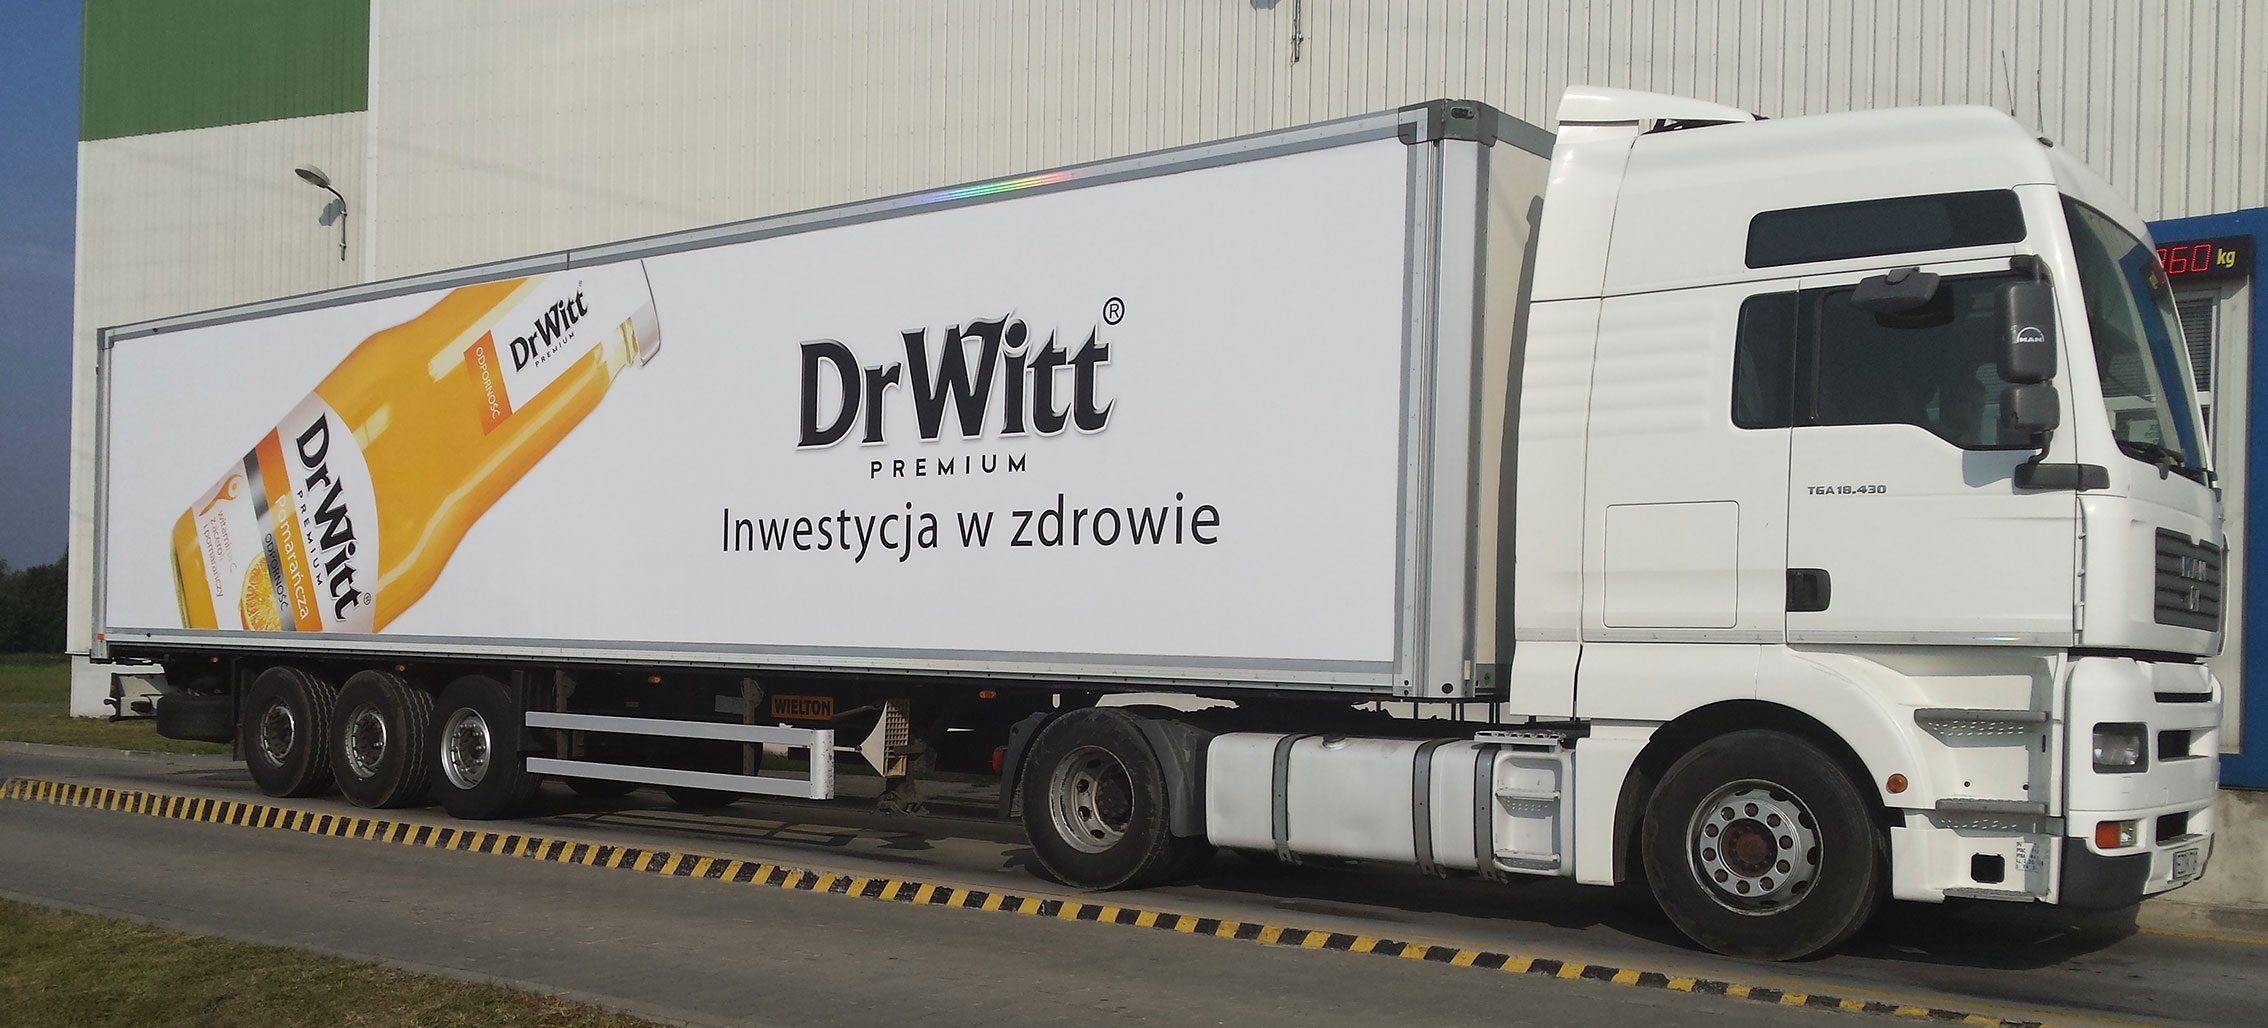 DrWitt – kampania mobilna i nowe narzędzie wsparcia